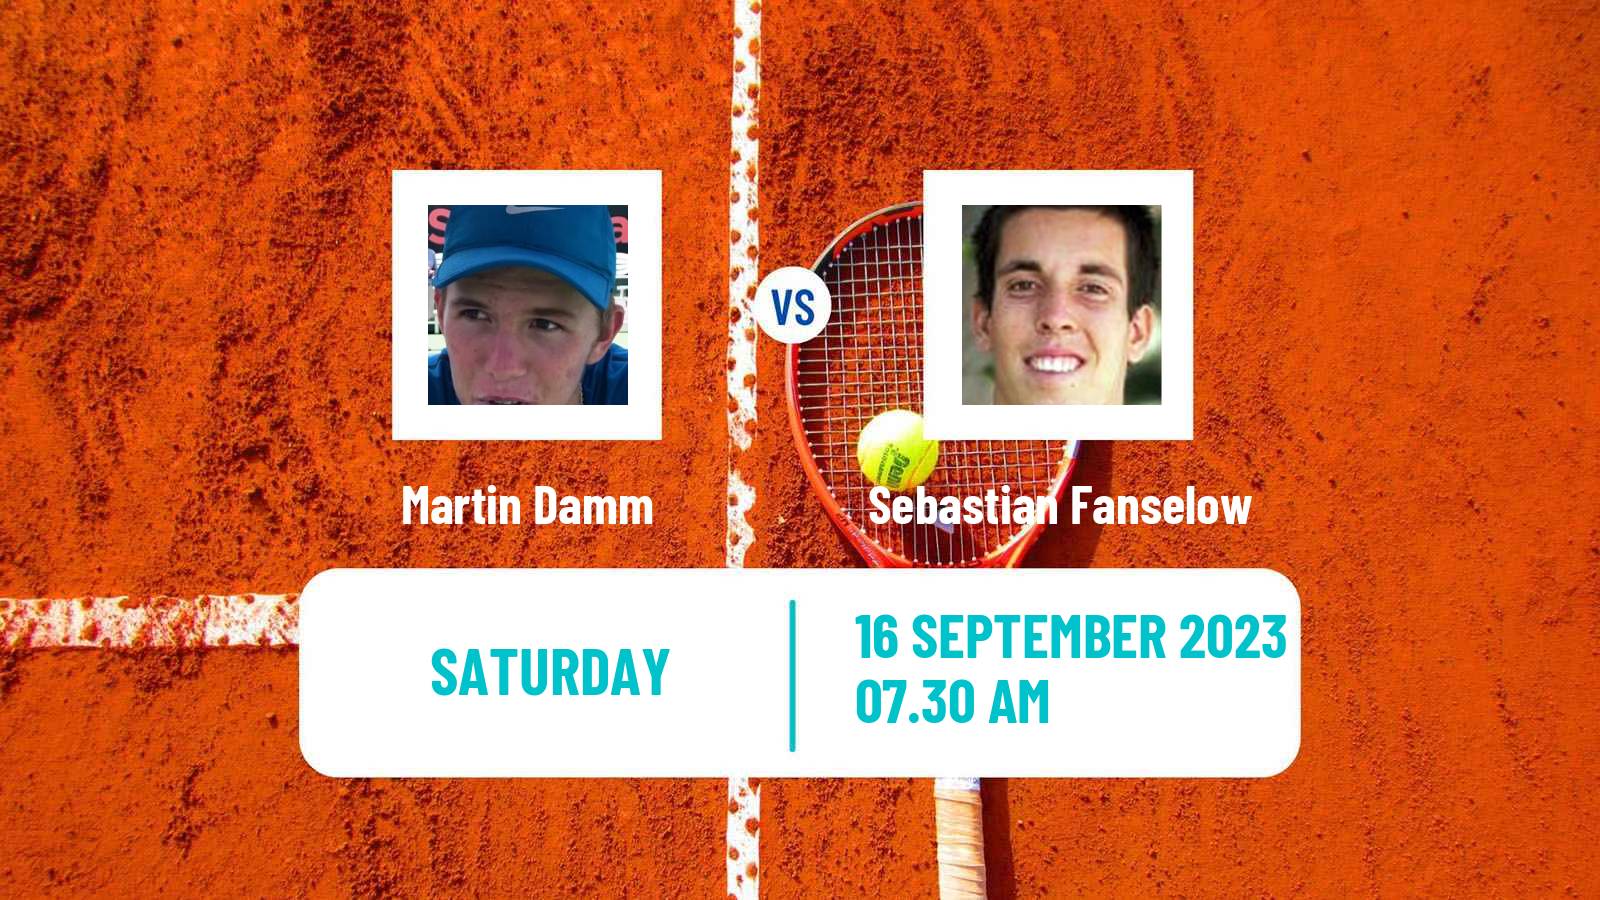 Tennis ITF M25 Sintra 2 Men Martin Damm - Sebastian Fanselow